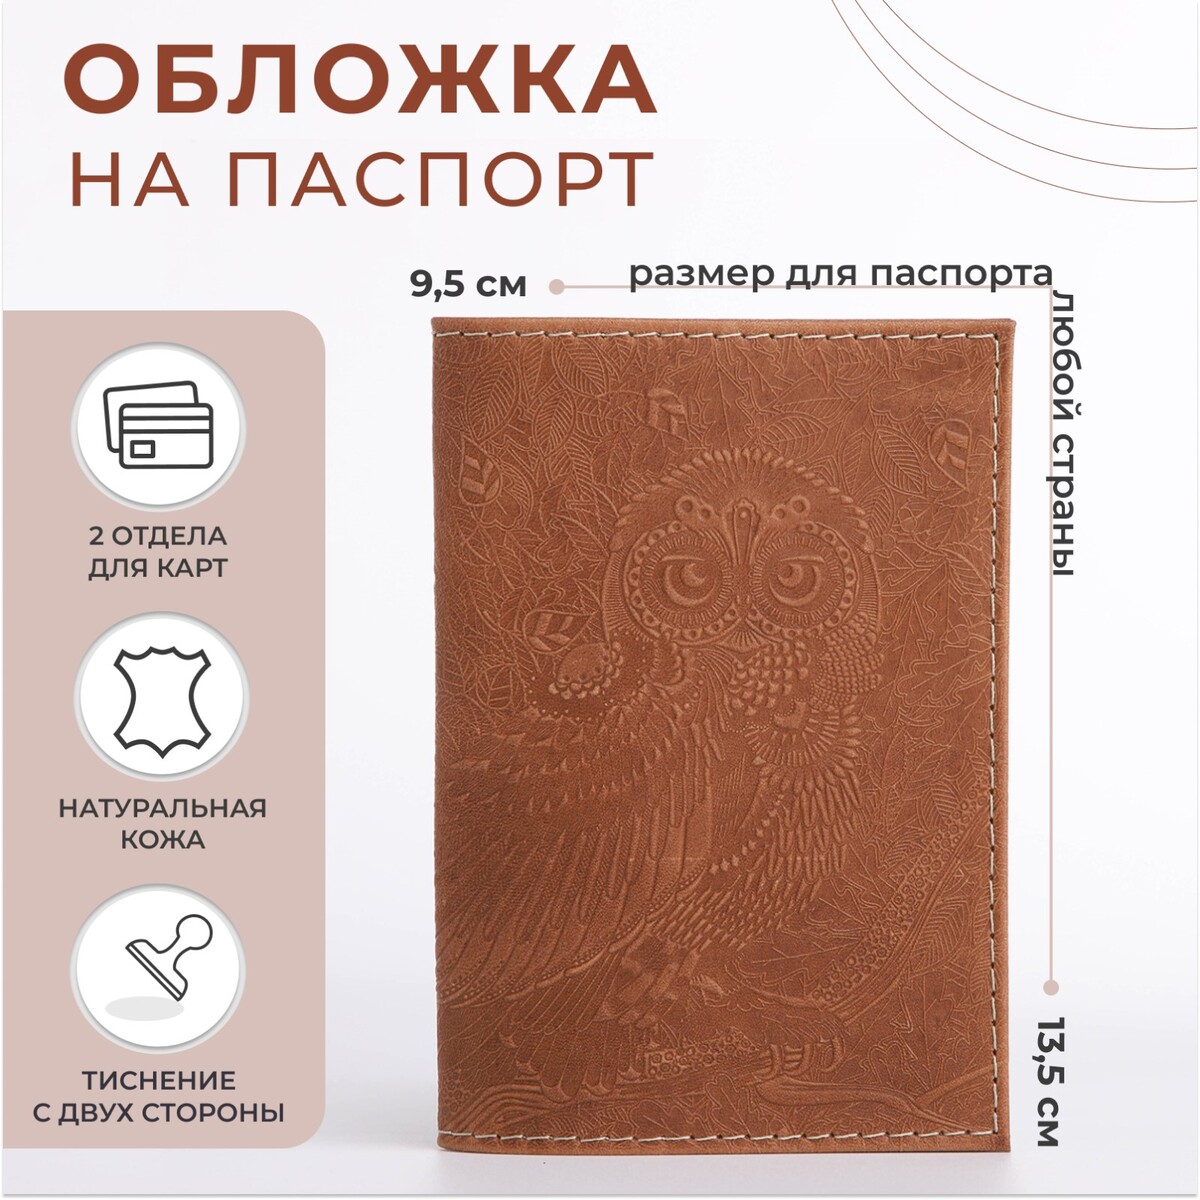 Обложка для паспорта, цвет темно-бежевый